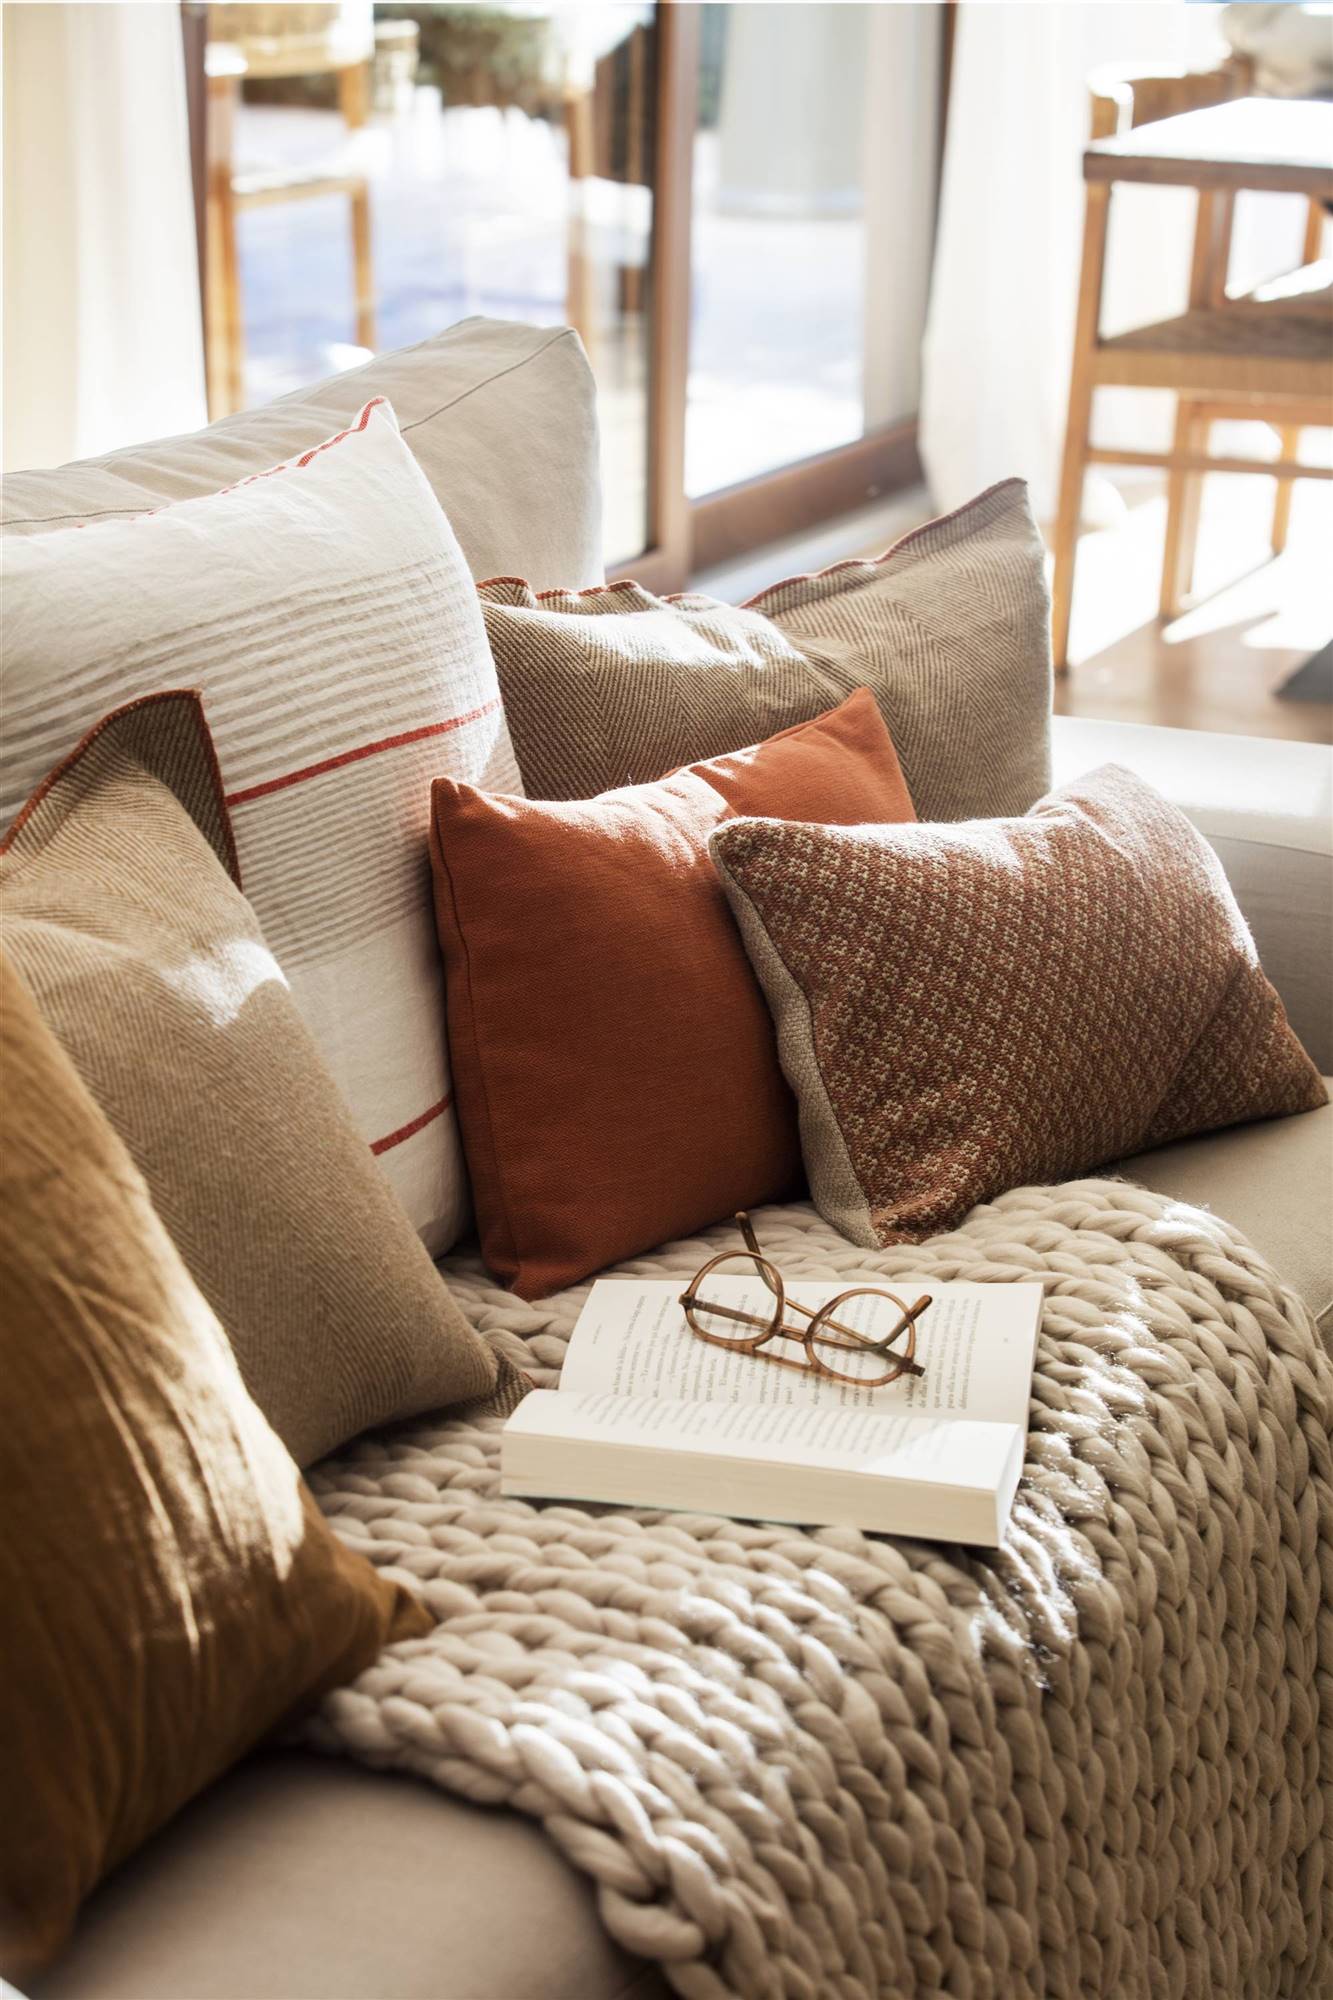 Analítico Asesor marca Mantas para el sofá: un recurso muy El Mueble que da calidez y decora tu  salón